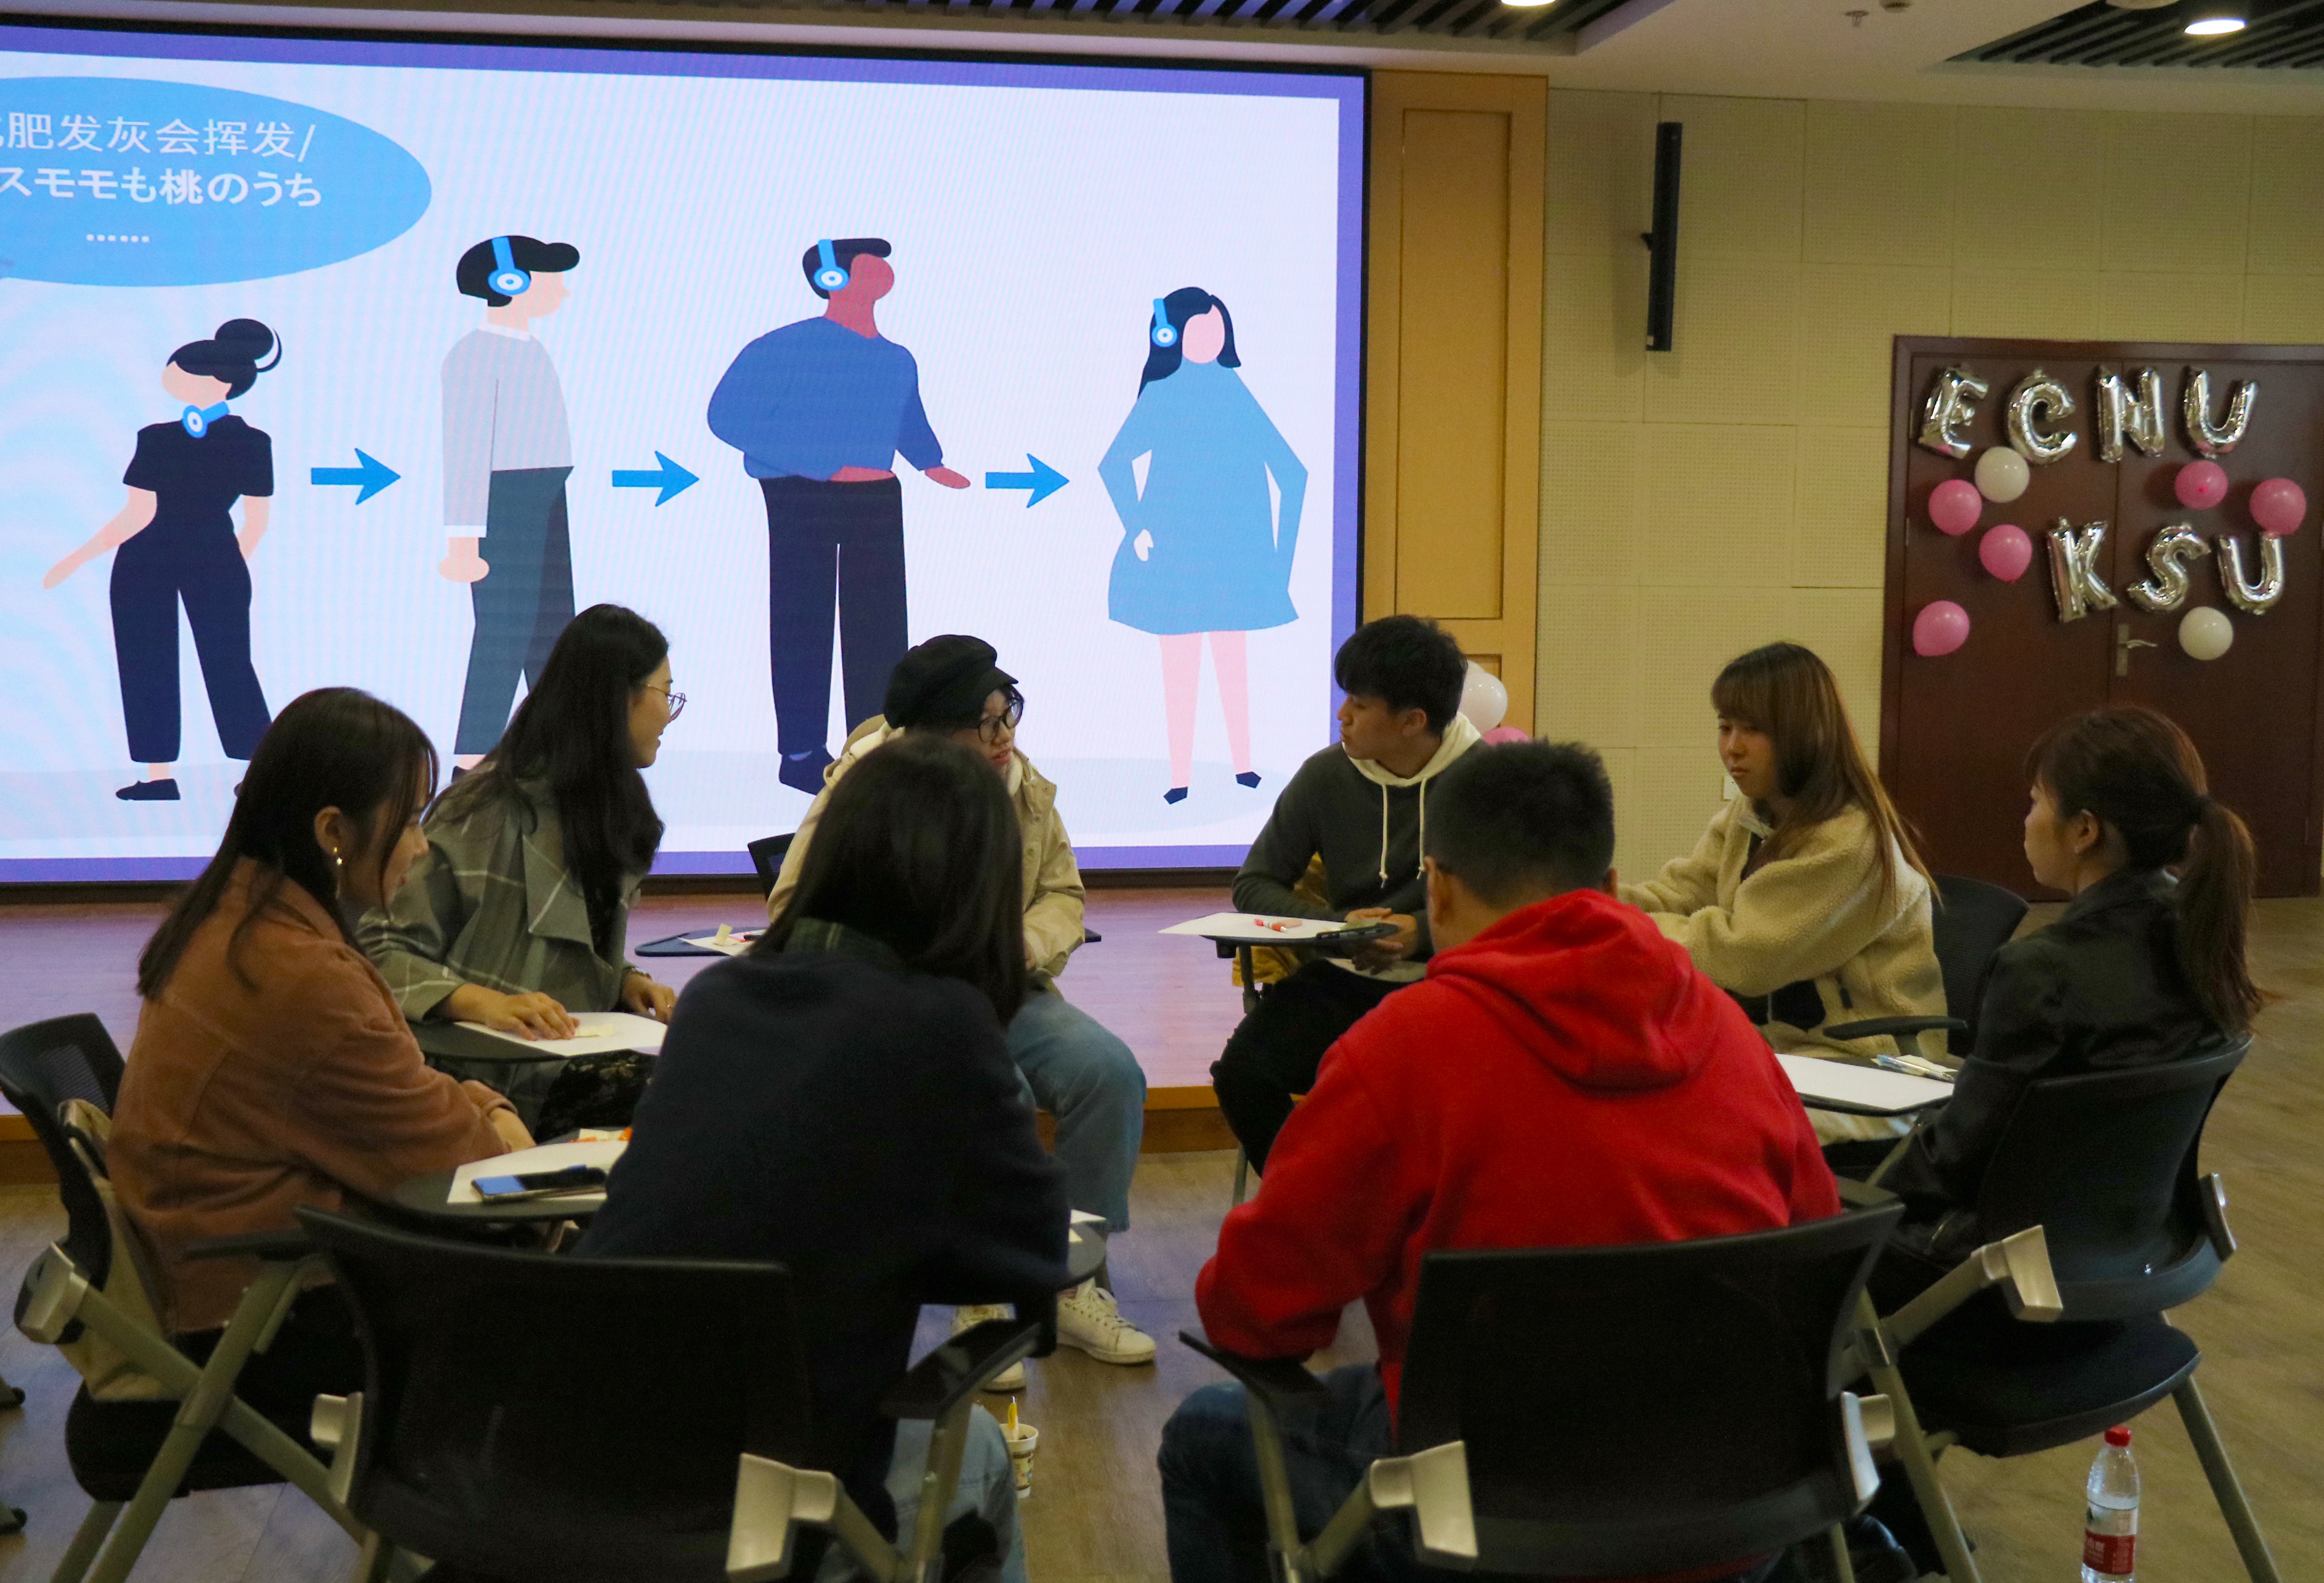 "引进来"的教学课堂,探索多元文化交流 ——京都产业